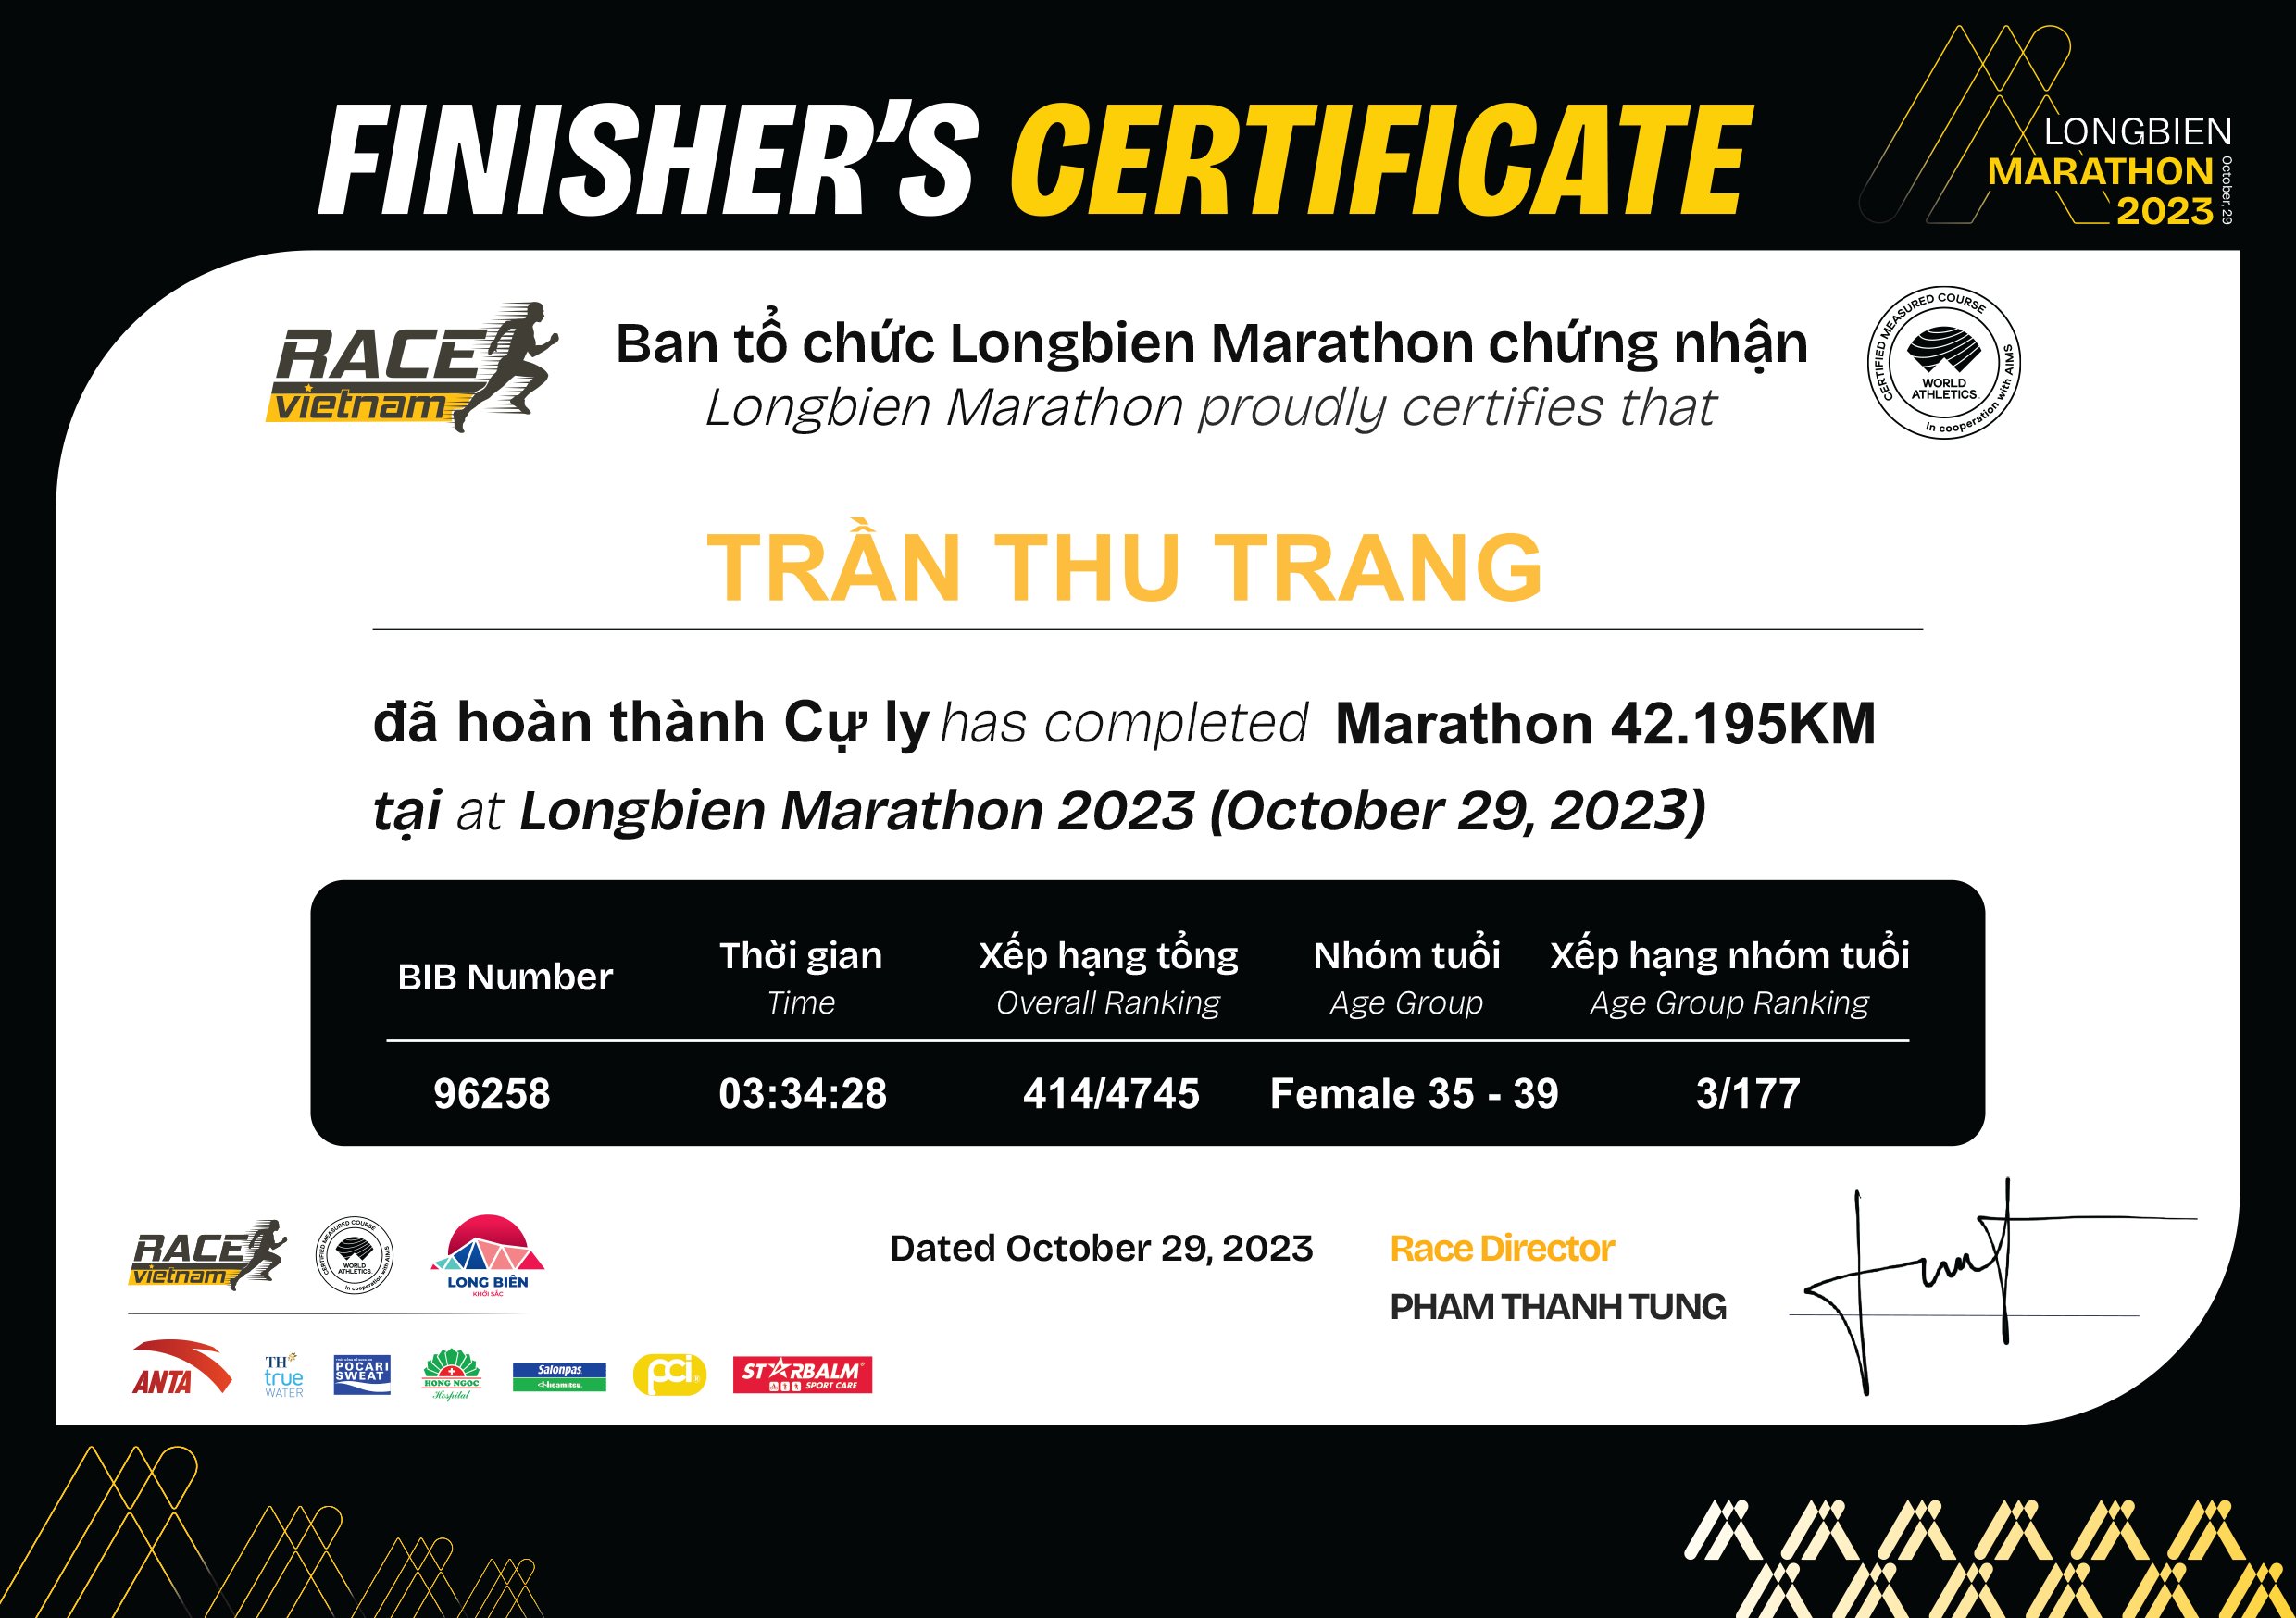 96258 - Trần Thu Trang